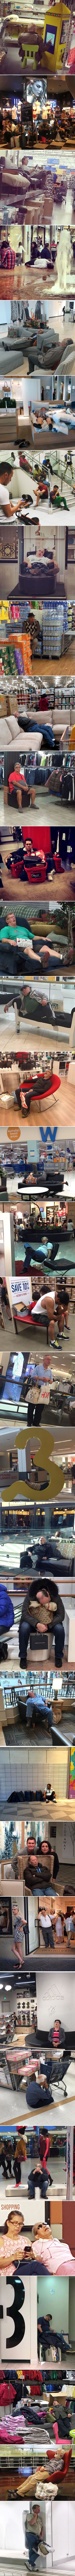 Smiješne slike koje otkrivaju čime se muškarci zapravo bave kad idu sa ženama u shopping